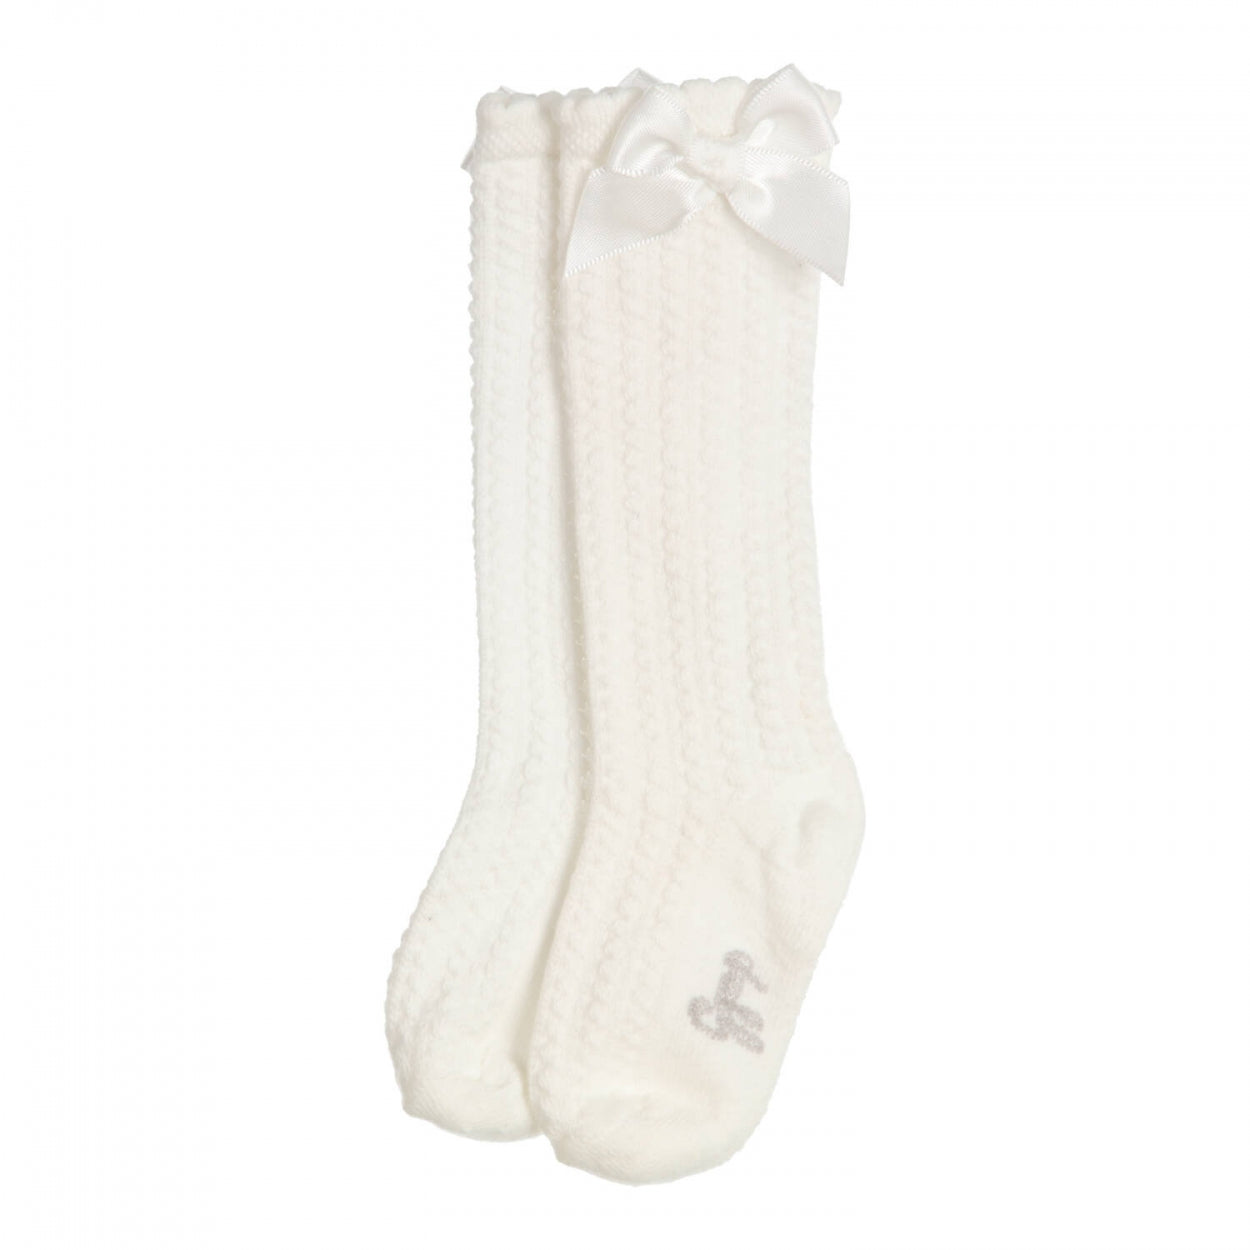 Meisjes Knee socks Kite van Gymp in de kleur Off White in maat 19/22.